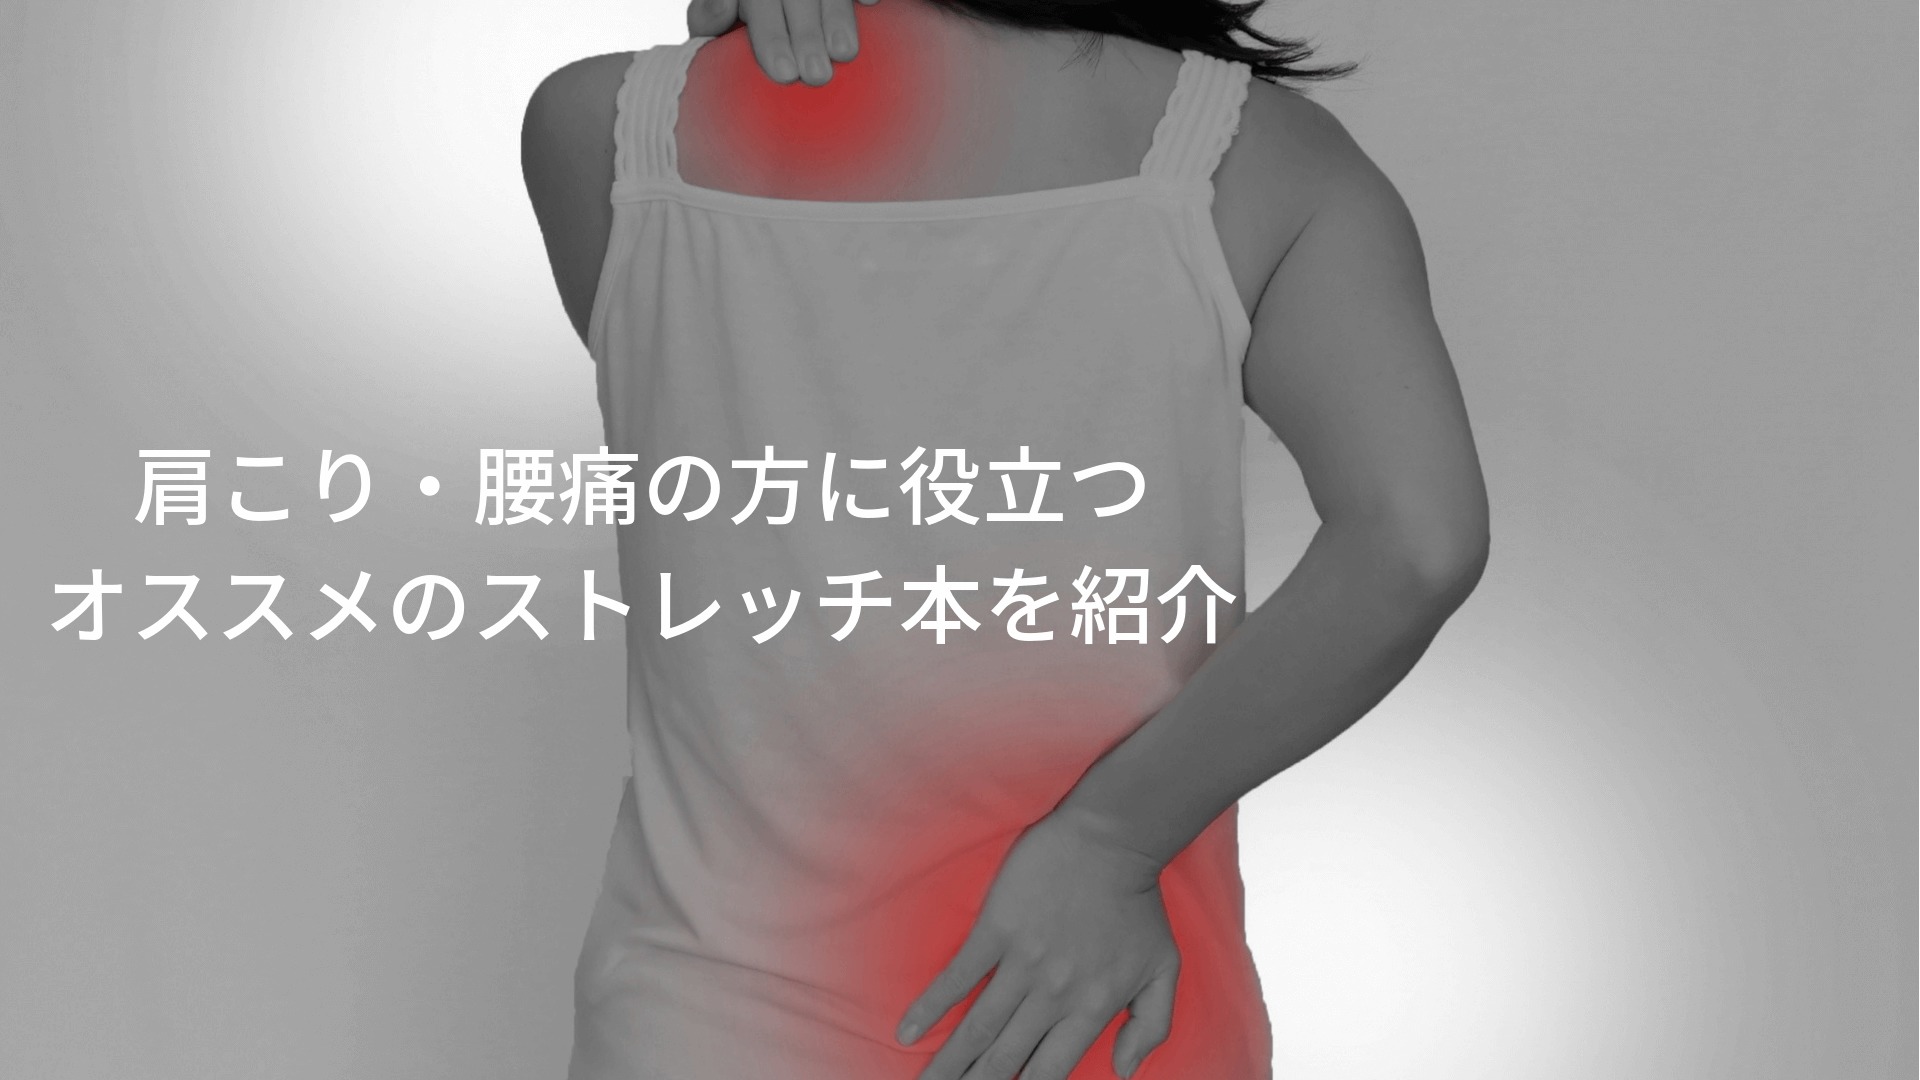 肩こり・腰痛の方に役立つ オススメのストレッチ本を紹介 (1)